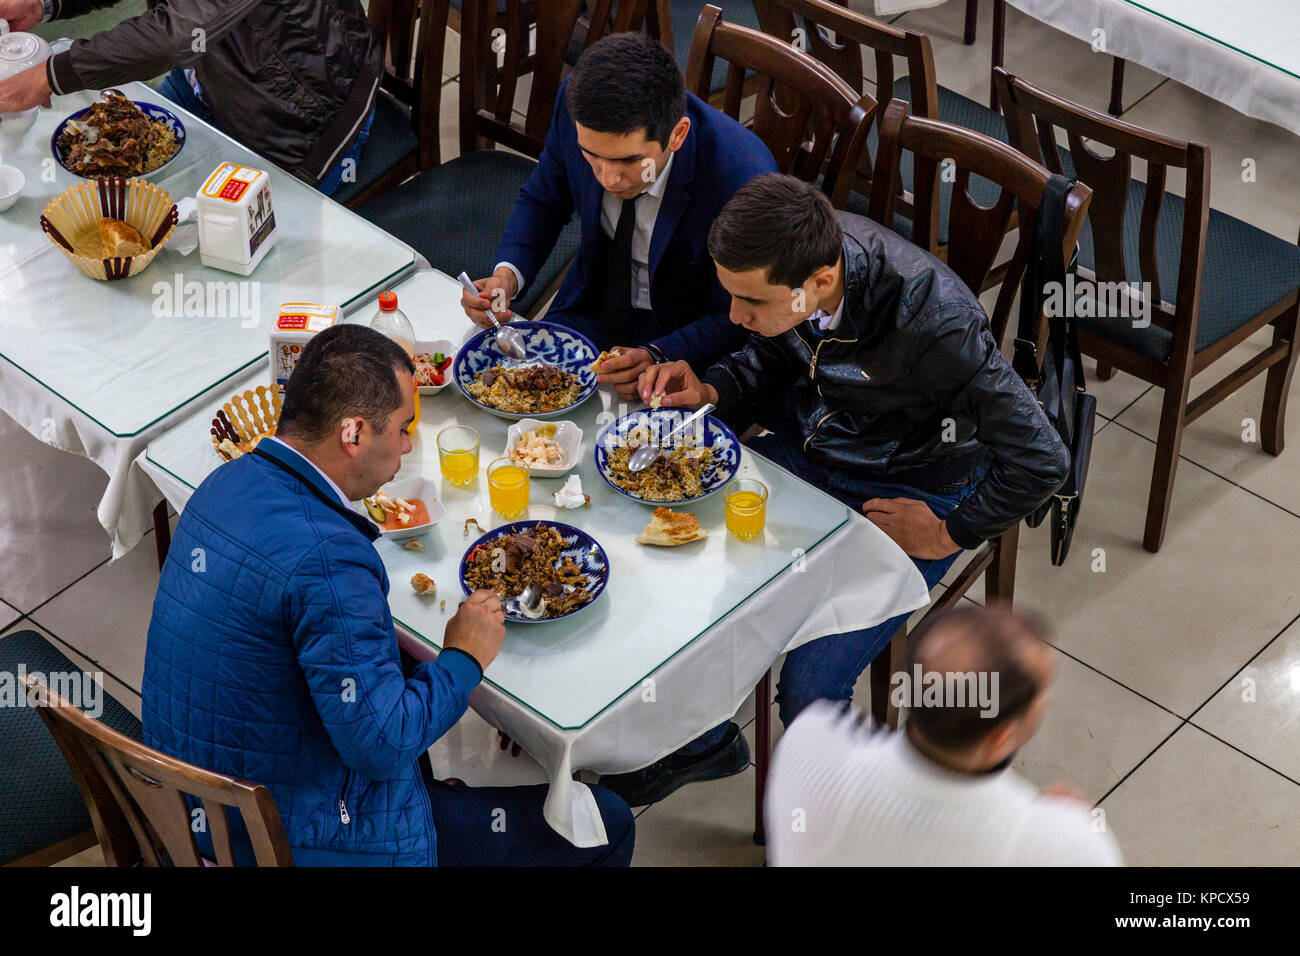 Uzbek Men Eating PLOV (The National Dish) At The Central Asian Plov Centre, Tashkent, Uzbekistan Stock Photo